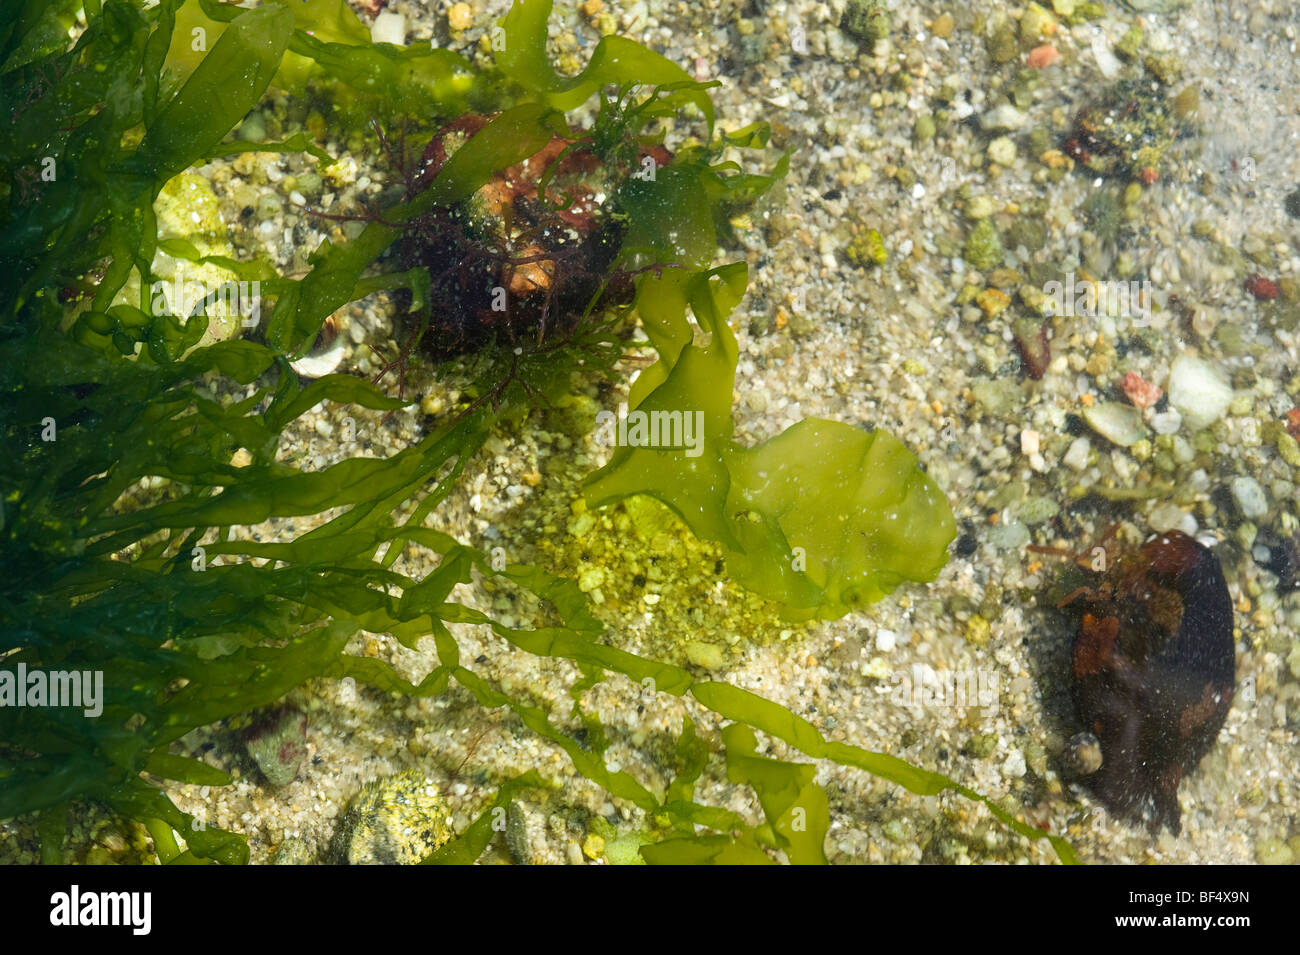 Sea lettuce (Ulva lactuca) Stock Photo